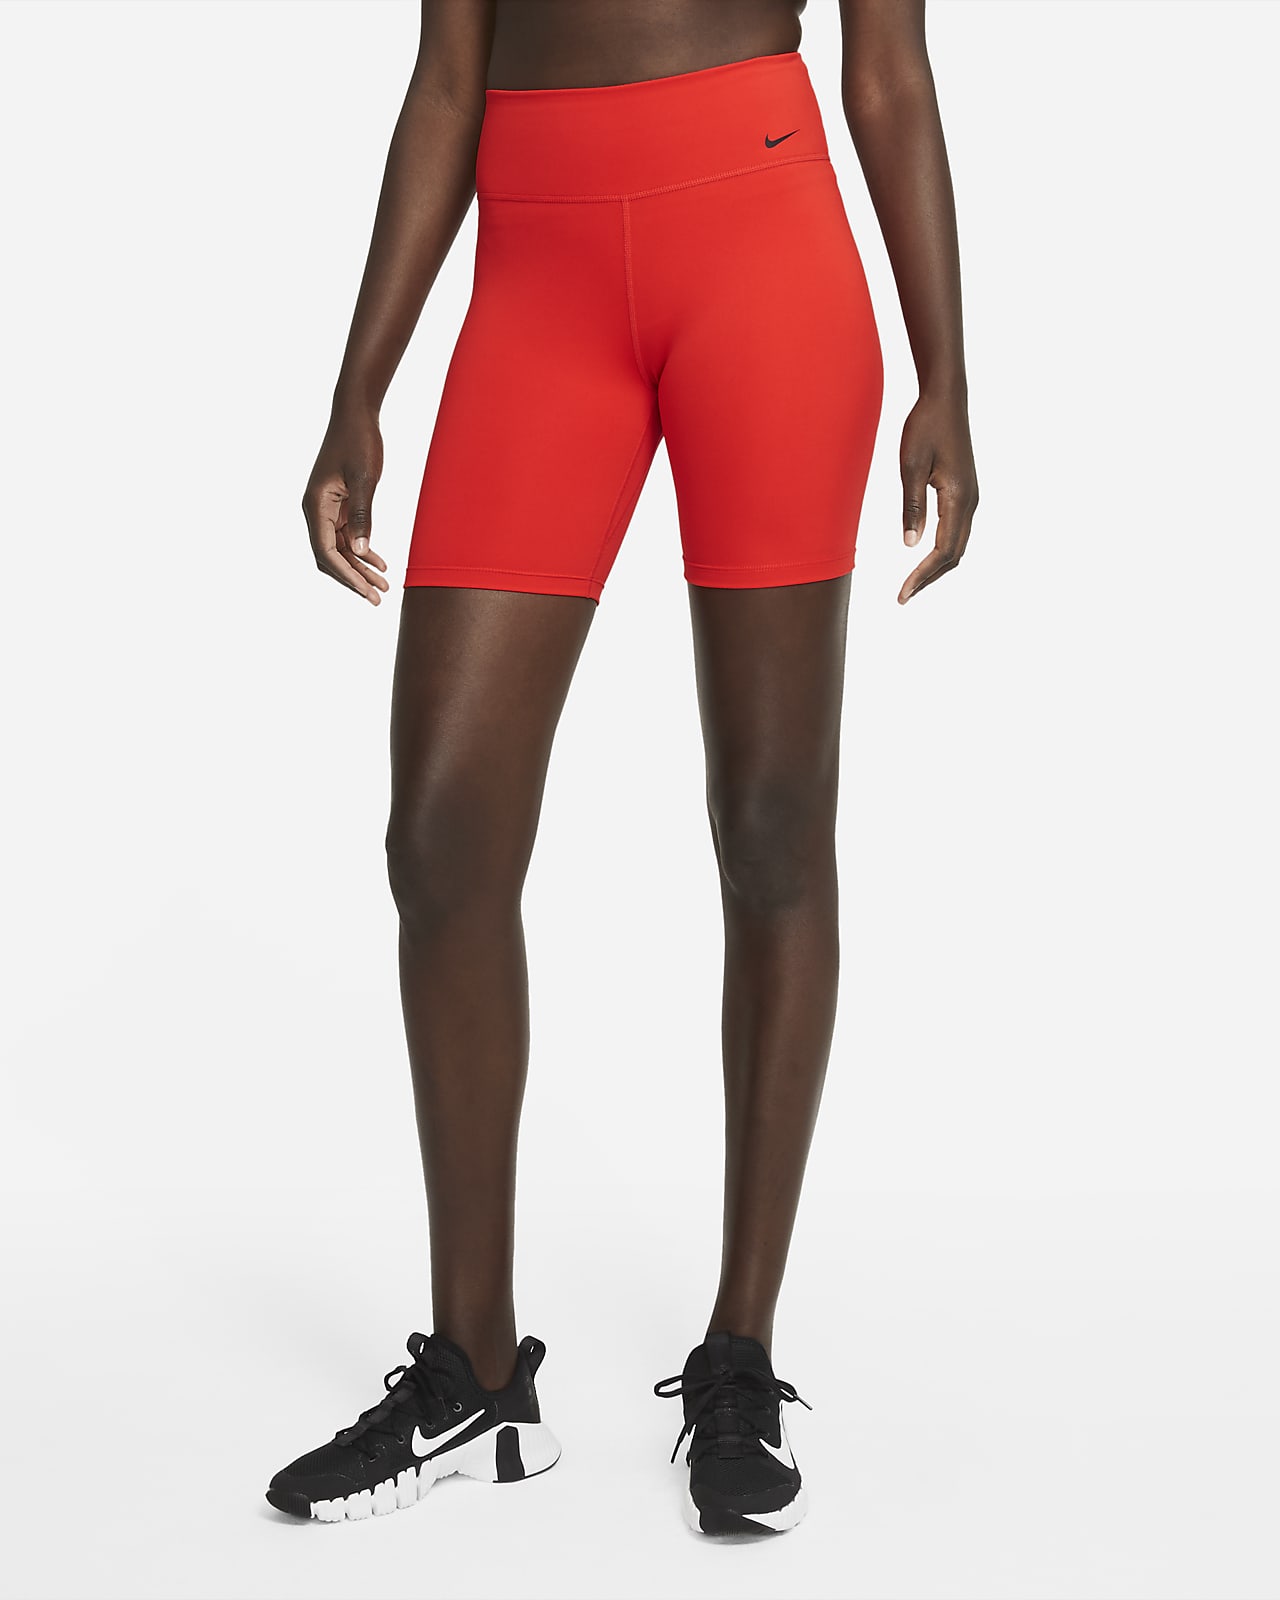 Pantalones cortos deportivos de cintura alta para mujer,shorts ajustados de malla roja pa #J-green 